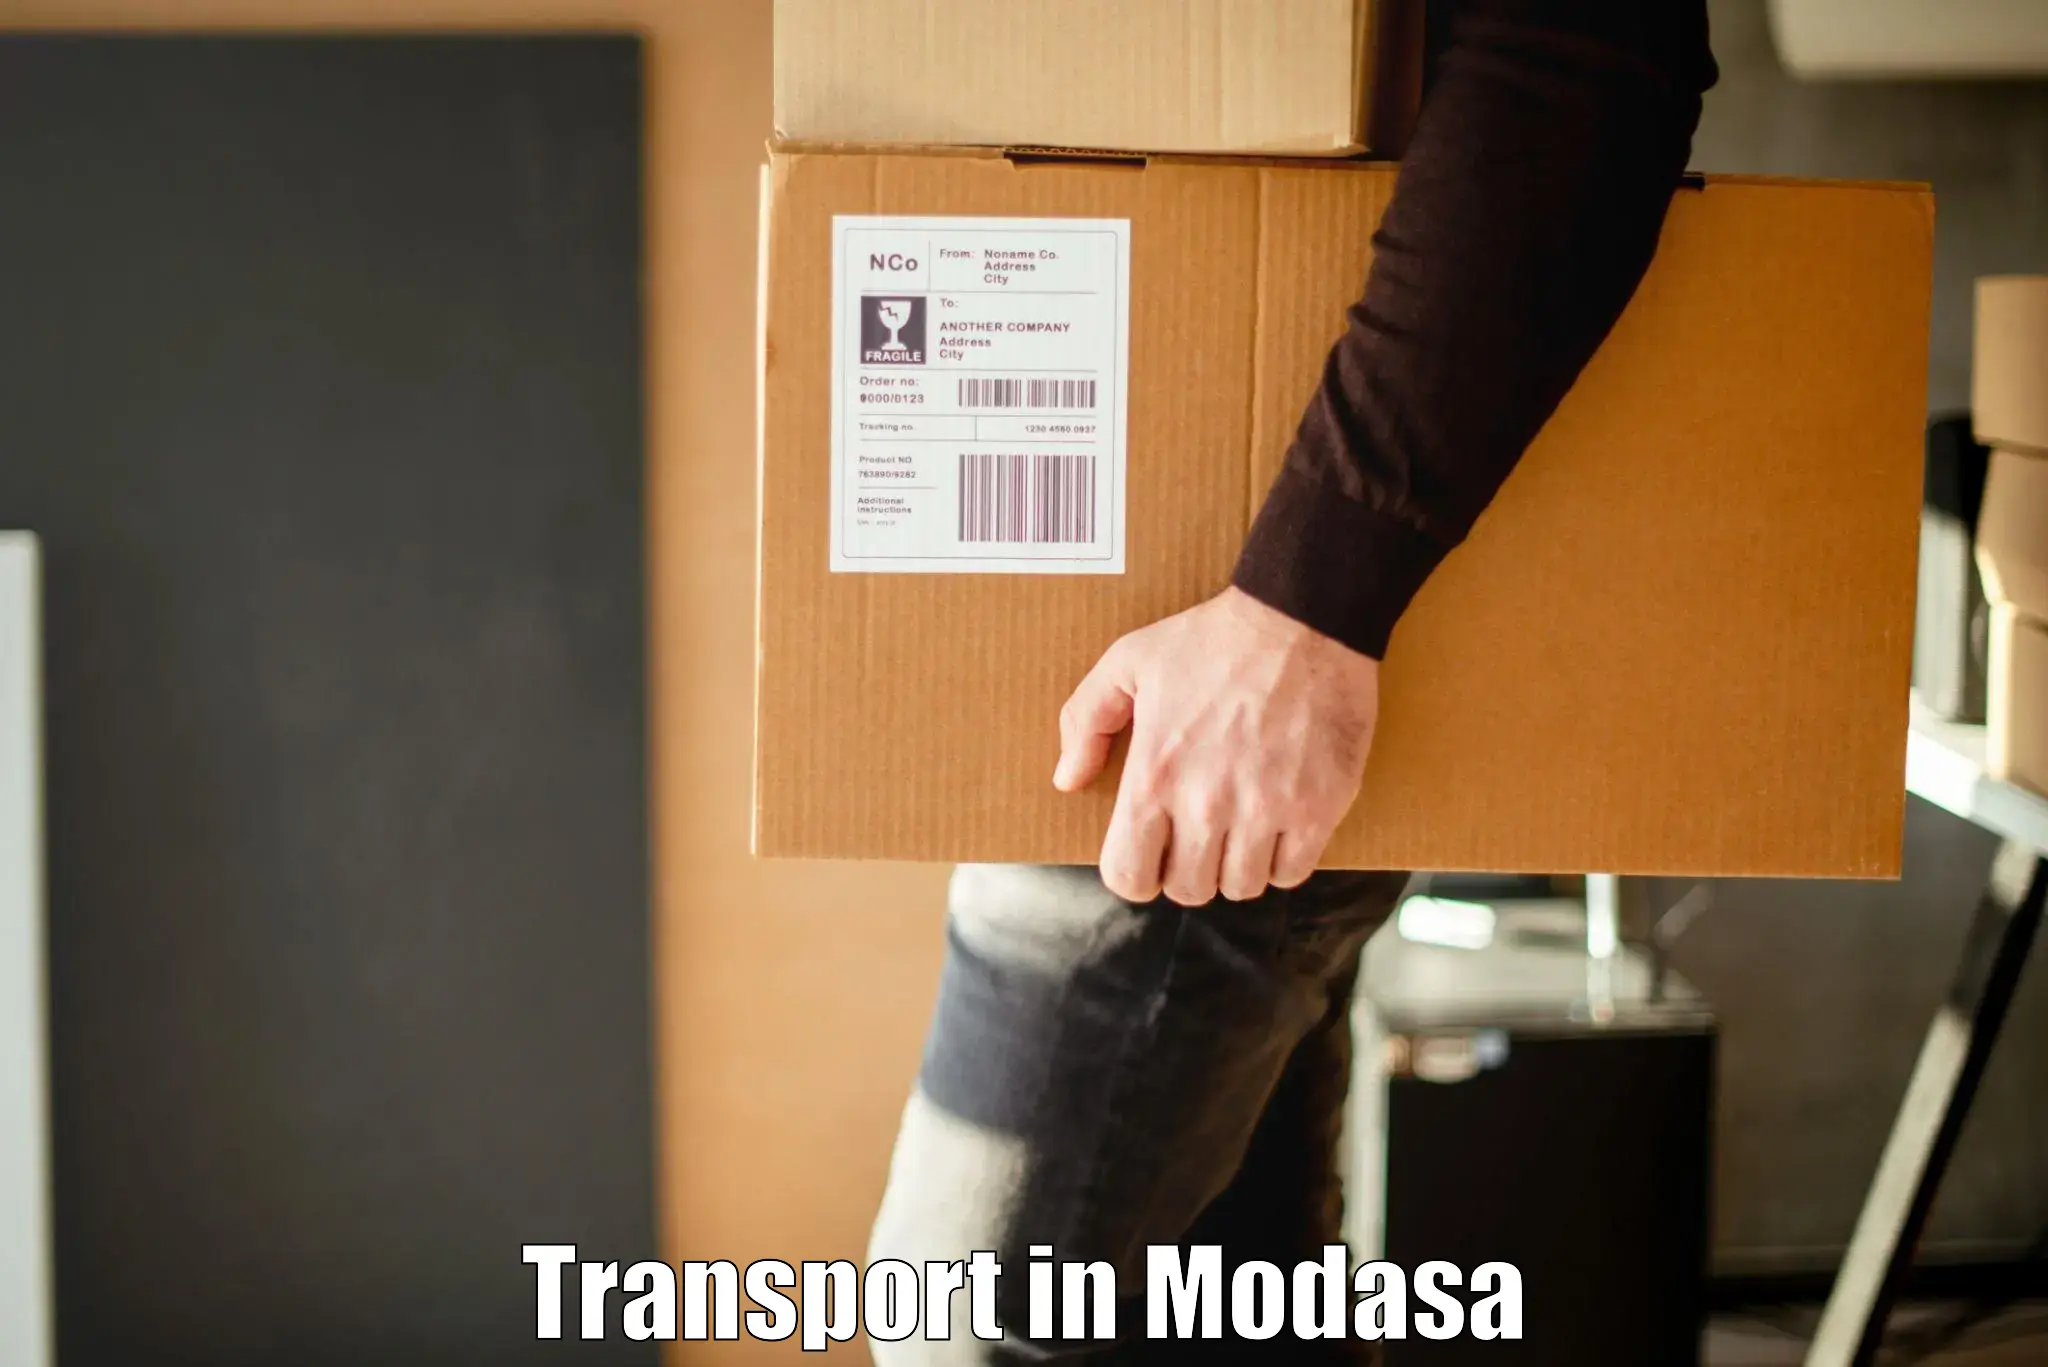 Air cargo transport services in Modasa